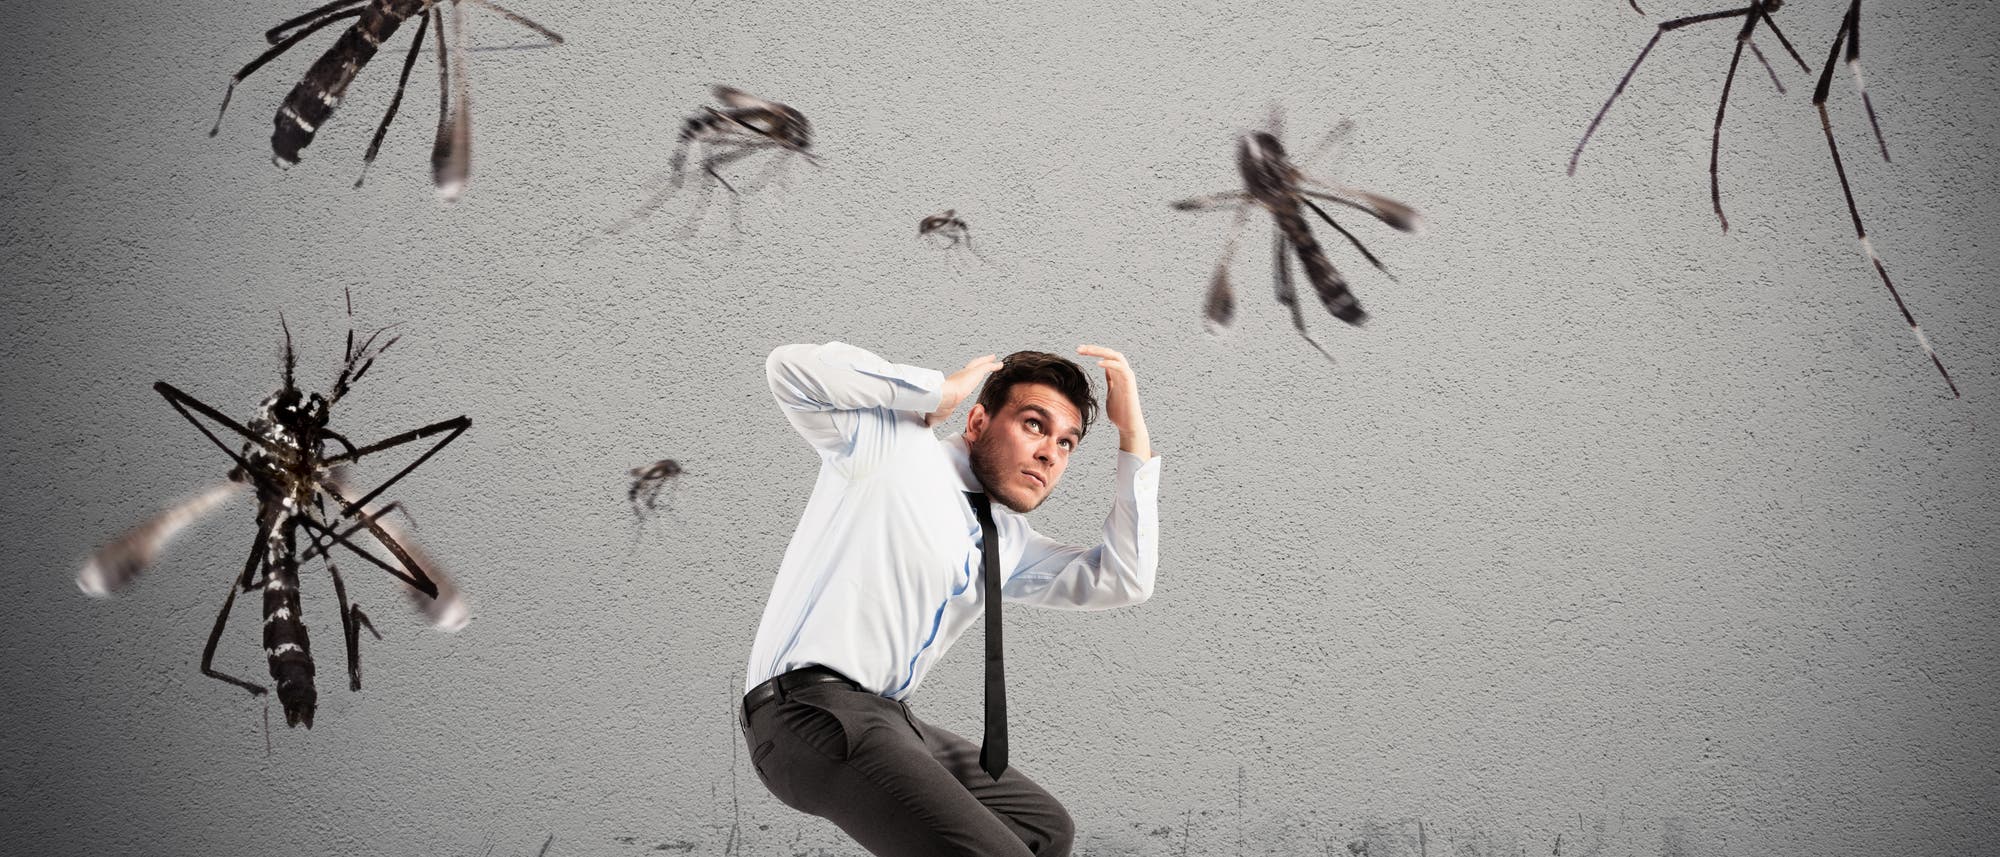 Symbolbild übergroße Mücken umschwirren einen Mann